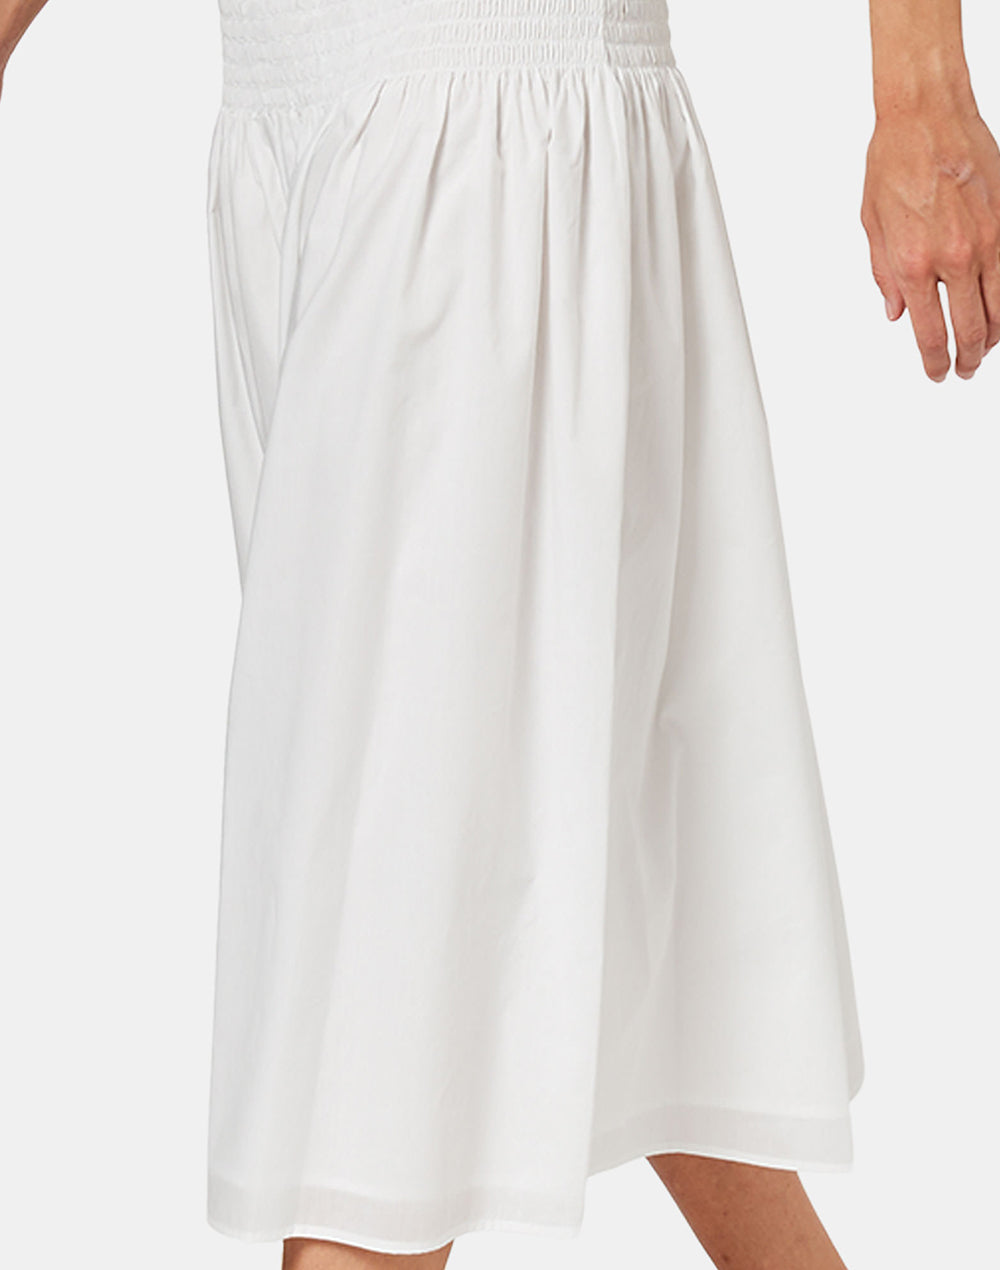 Sundek cotton muslin skirt GW467SKCM200-00600 – SUNDEK